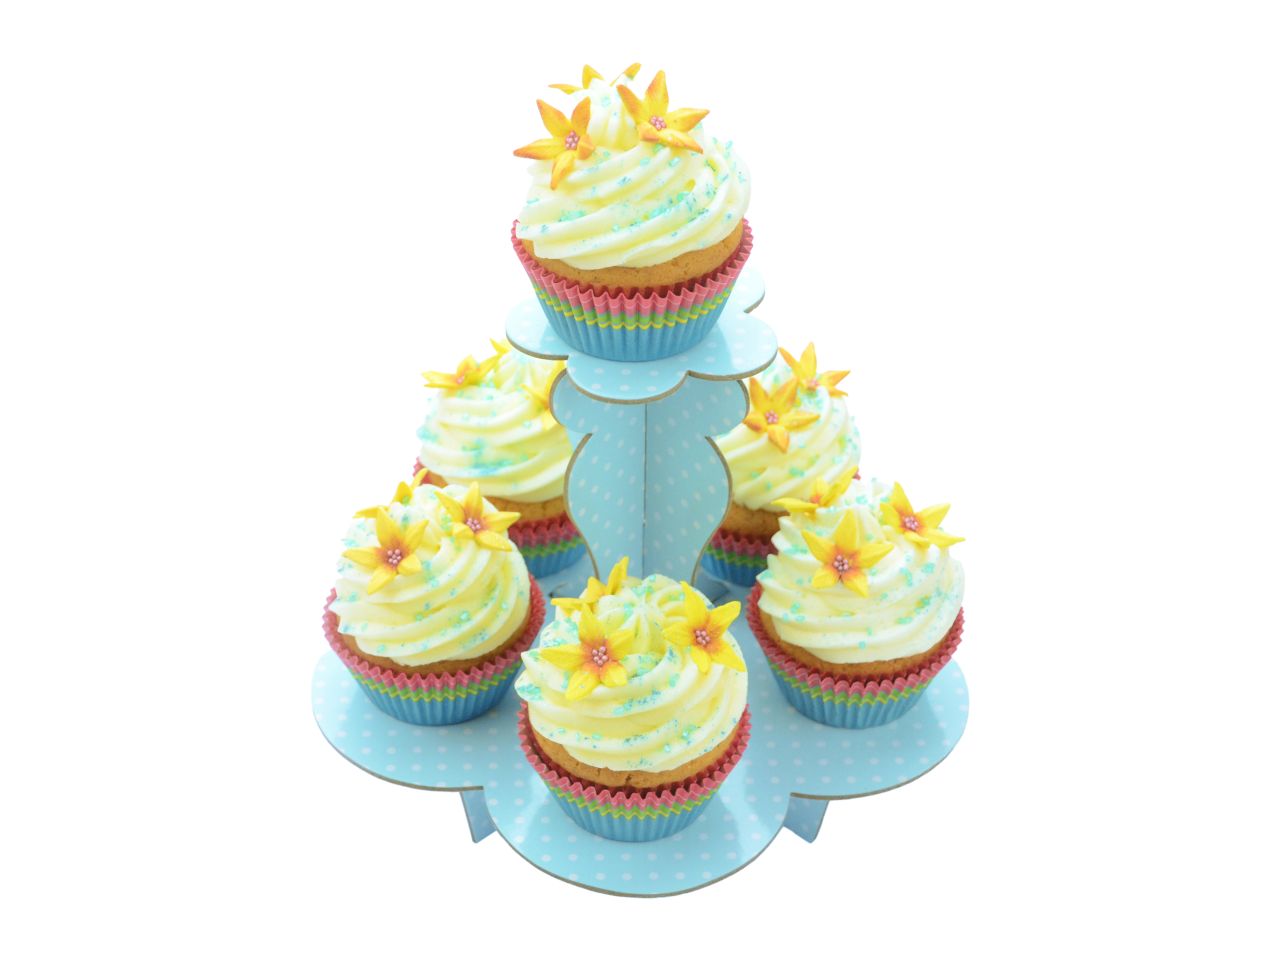 Cupcake-Etagere: Blau mit Dots, Karton, Hellblau & weiße Punkte, 20 cm x 18 cm